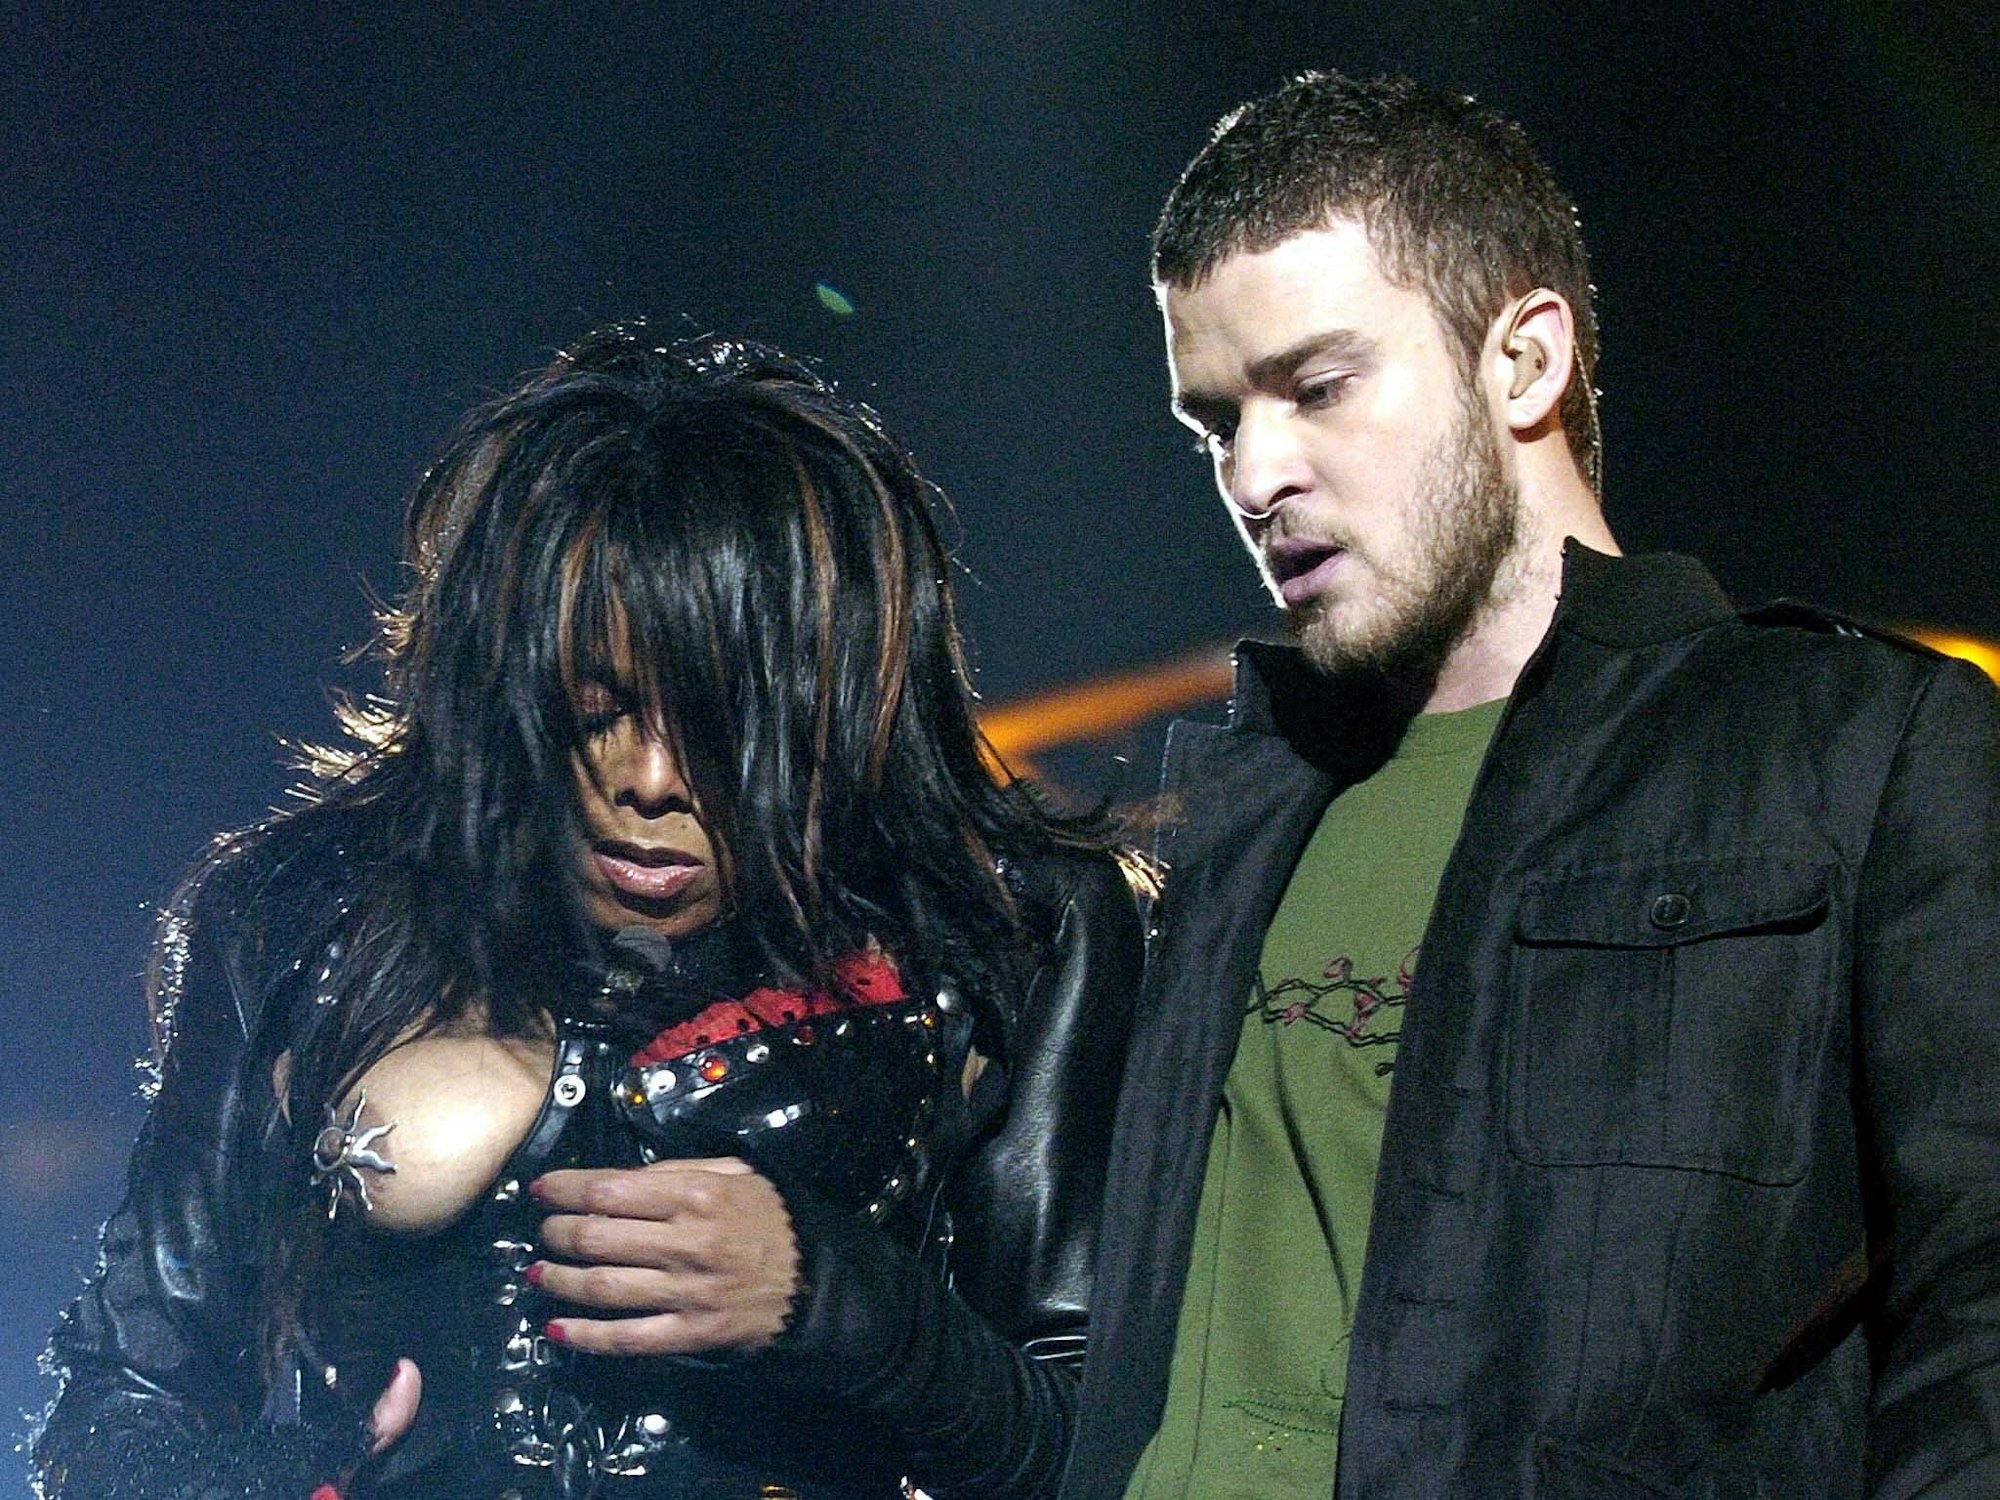 Popsänger Justin Timberlake reißt seiner Duett-Partnerin Janet Jackson bei einer Pauseneinlage des Super Bowls am 1. Februar in Houston/Texas das Oberteil ab und enthüllt ihre Brust.